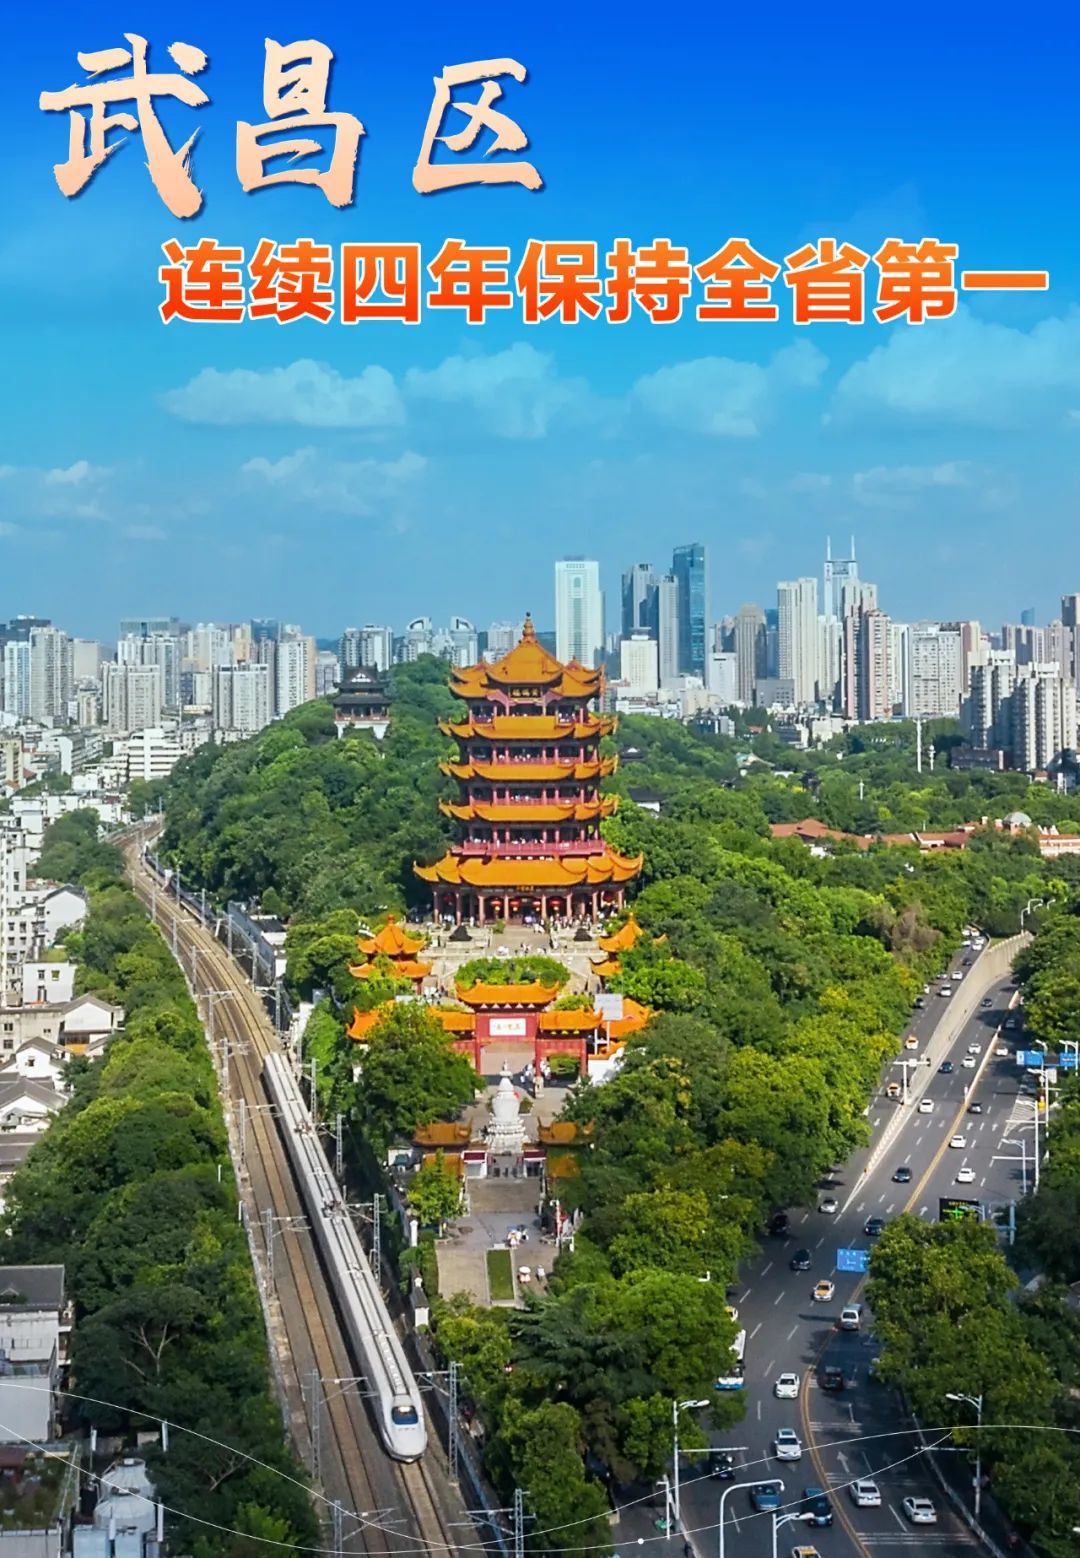 8月8日，赛迪顾问城市经济研究中心发布“2023赛迪百强区”。武昌区较去年再前进4位，排名42，连续四年保持全省第一，首位之区优势持续巩固。